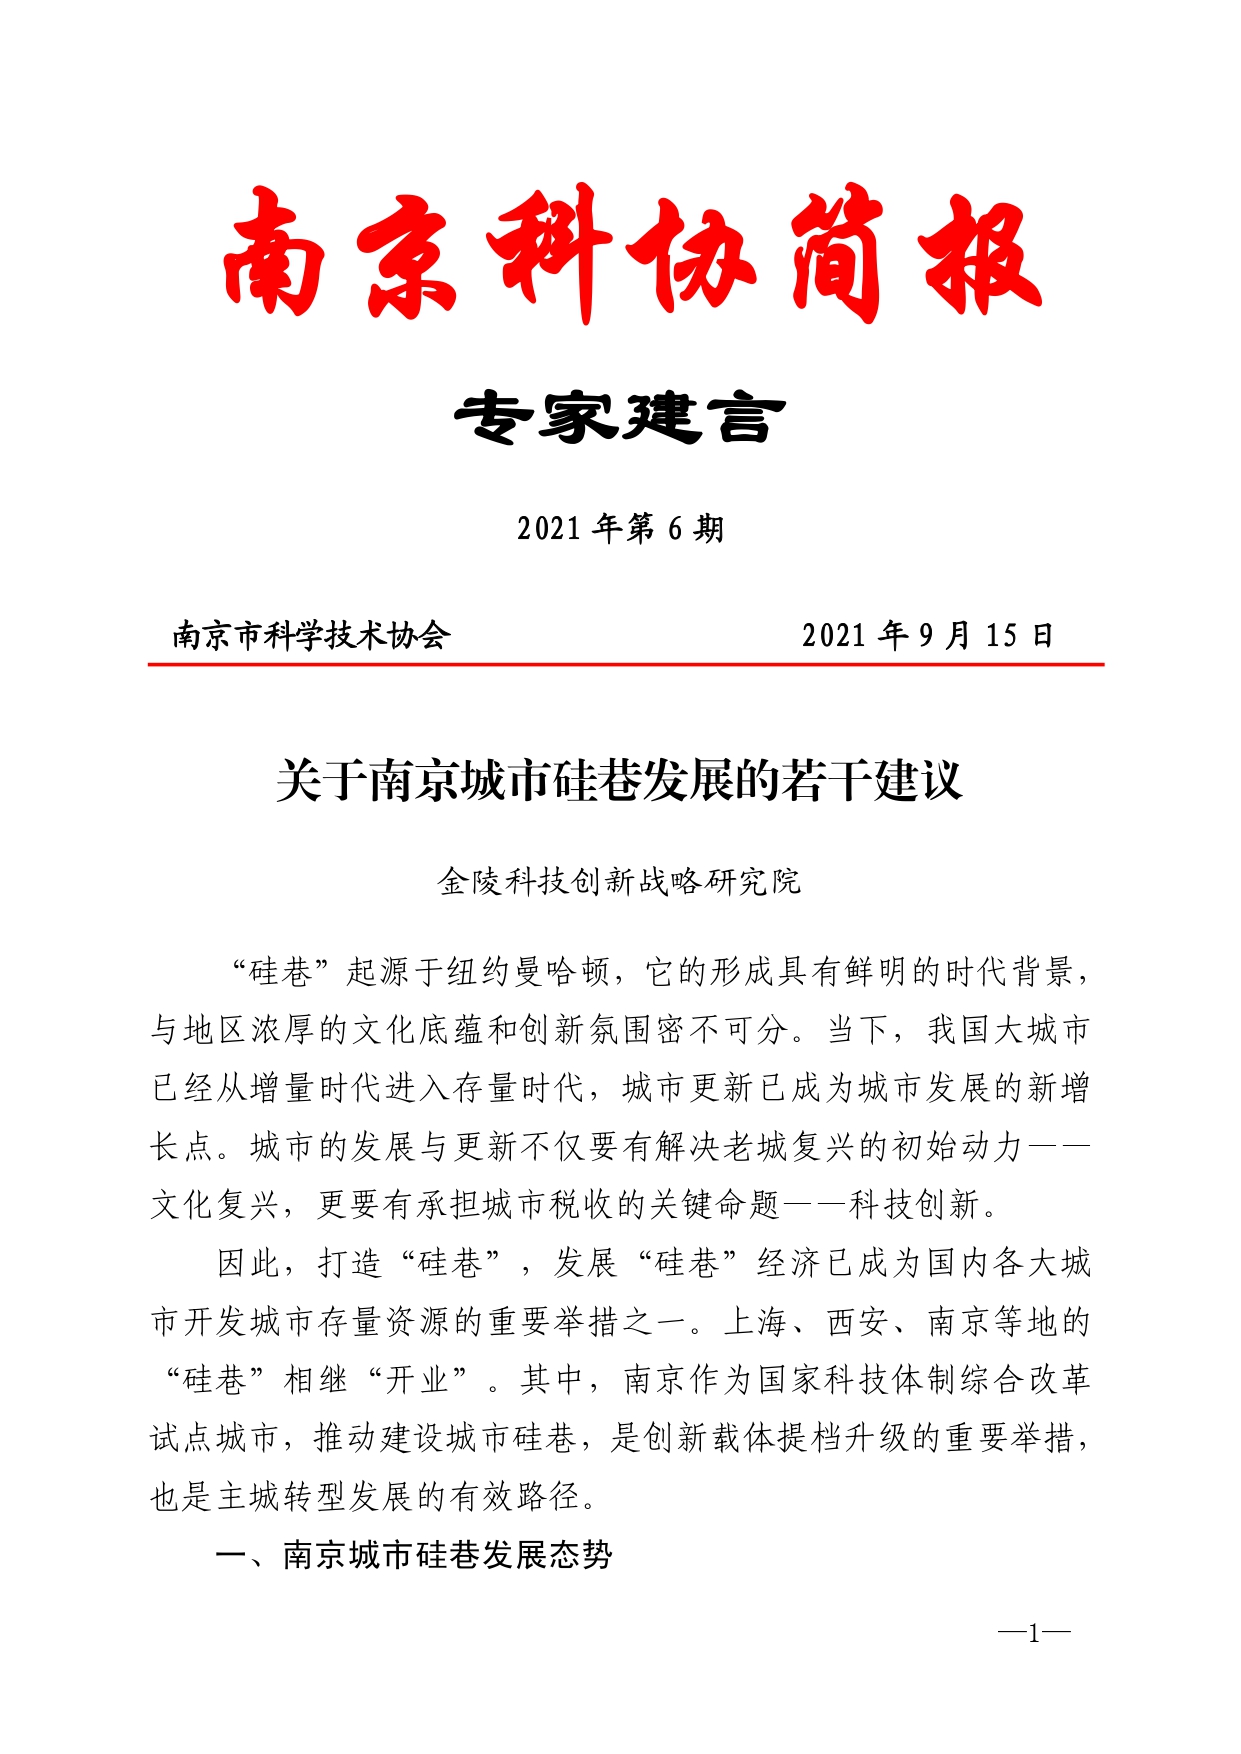 2021年第6期（关于南京城市硅巷发展的若干建议）-印刷版_page-0001.jpg